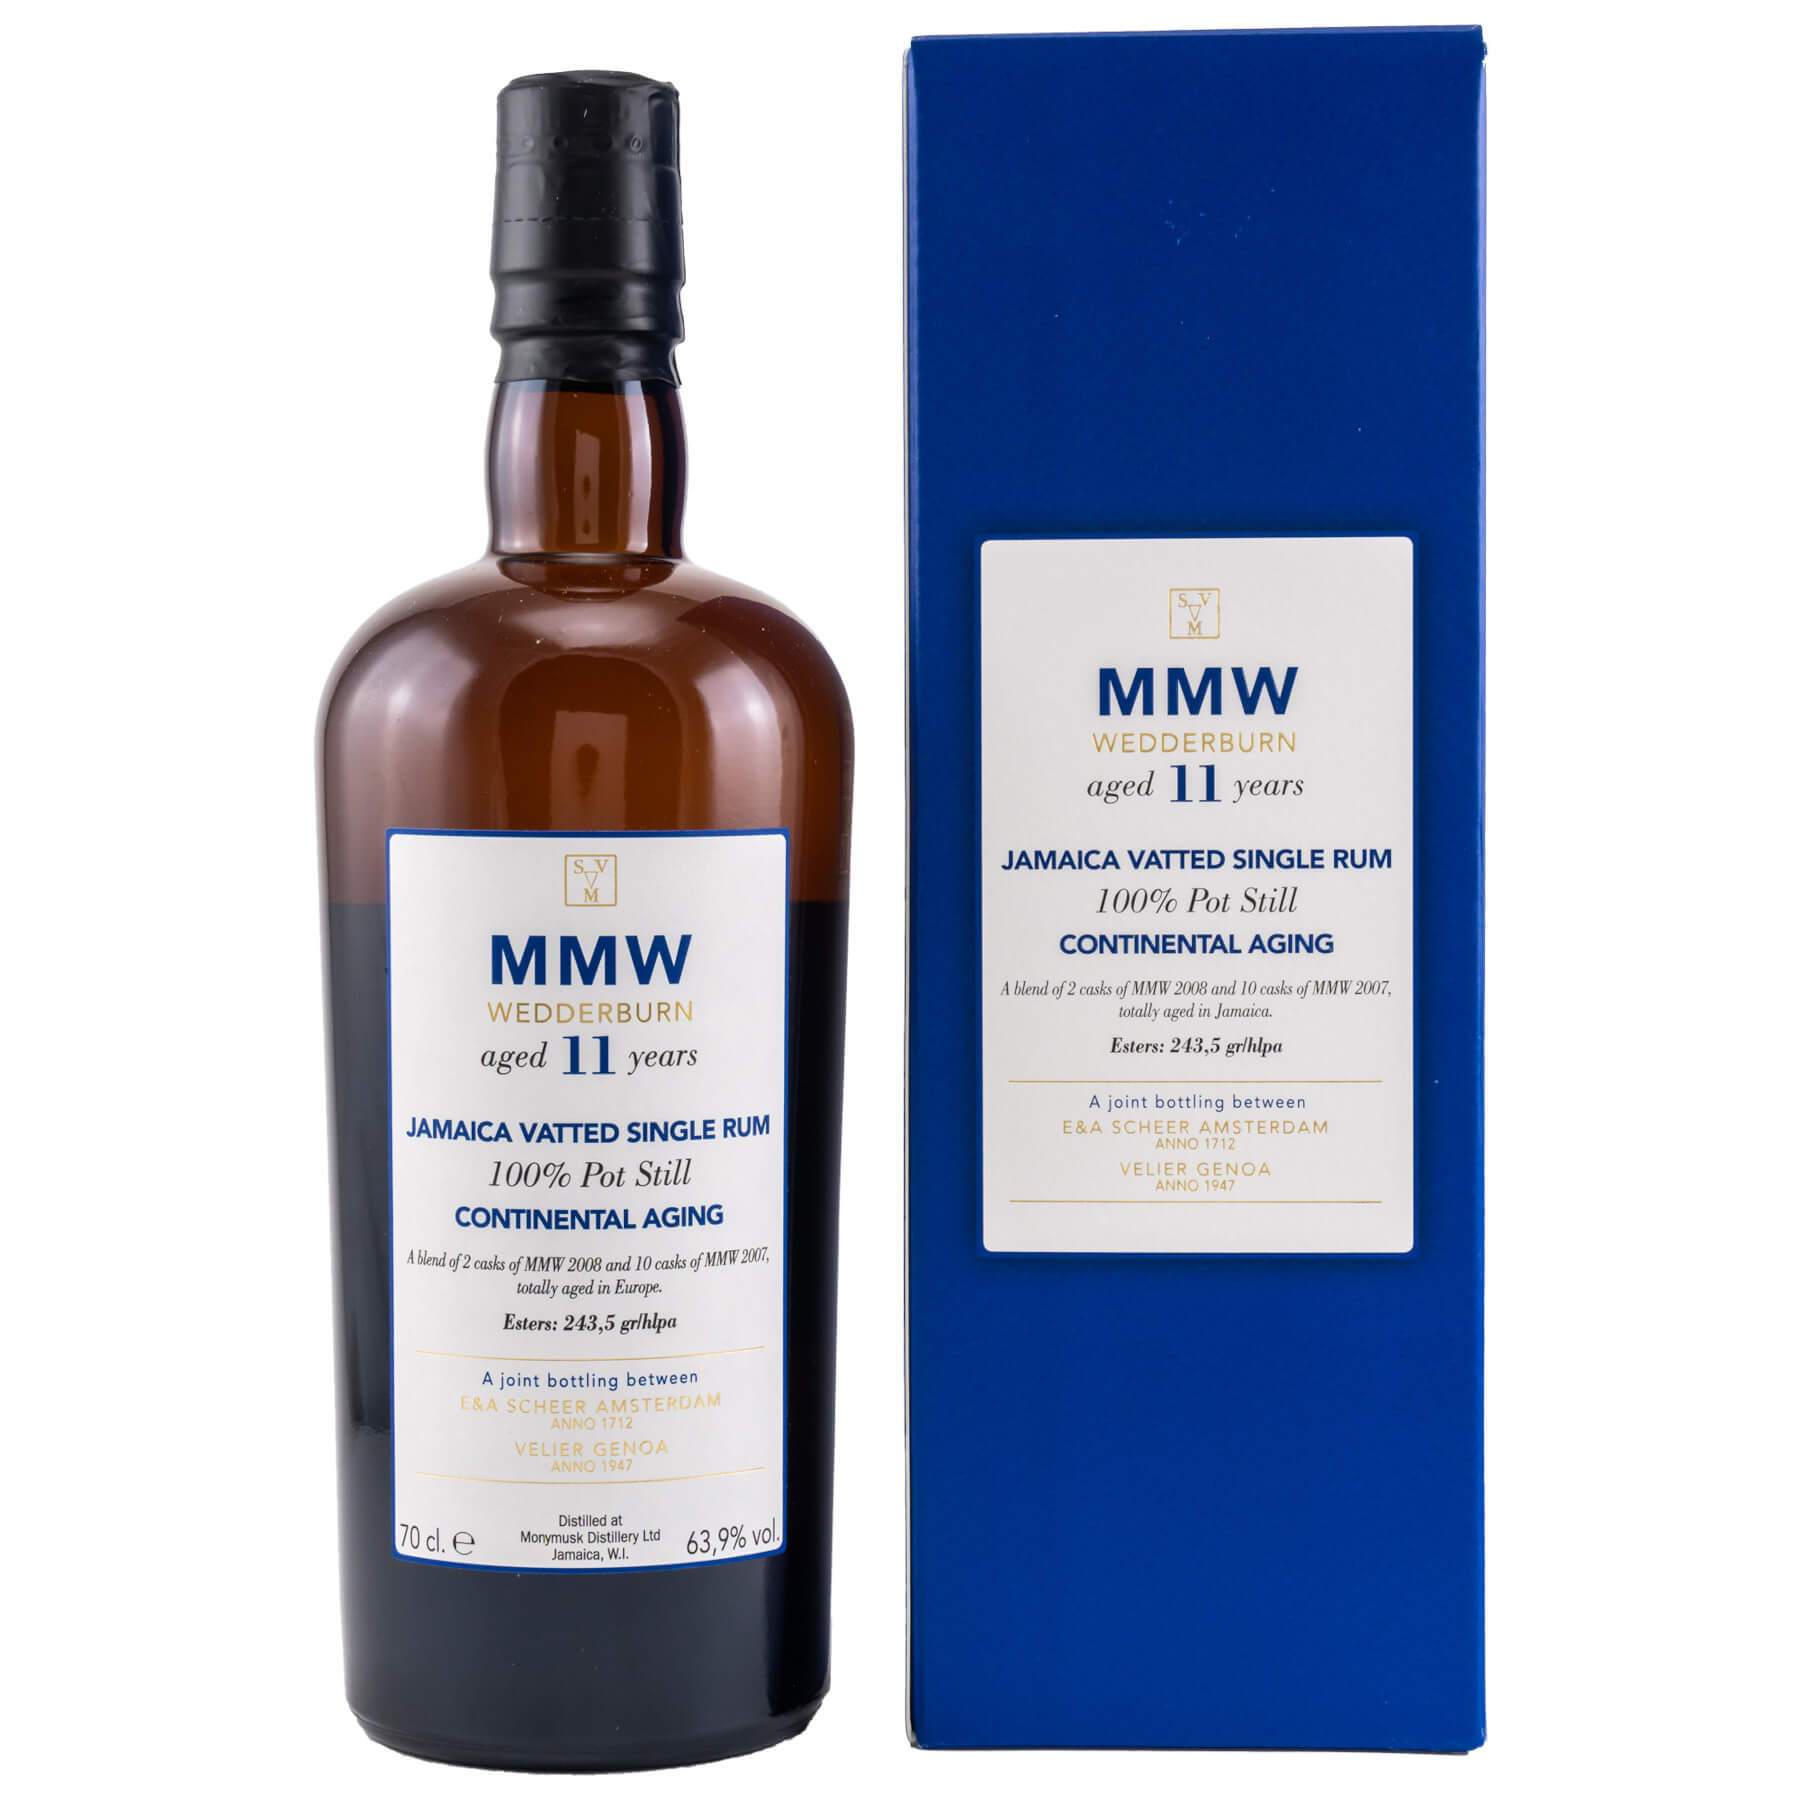 Flasche und rote Verpackung Monymusk MMW Wedderburn 11 Jahre Continental Aging Rum